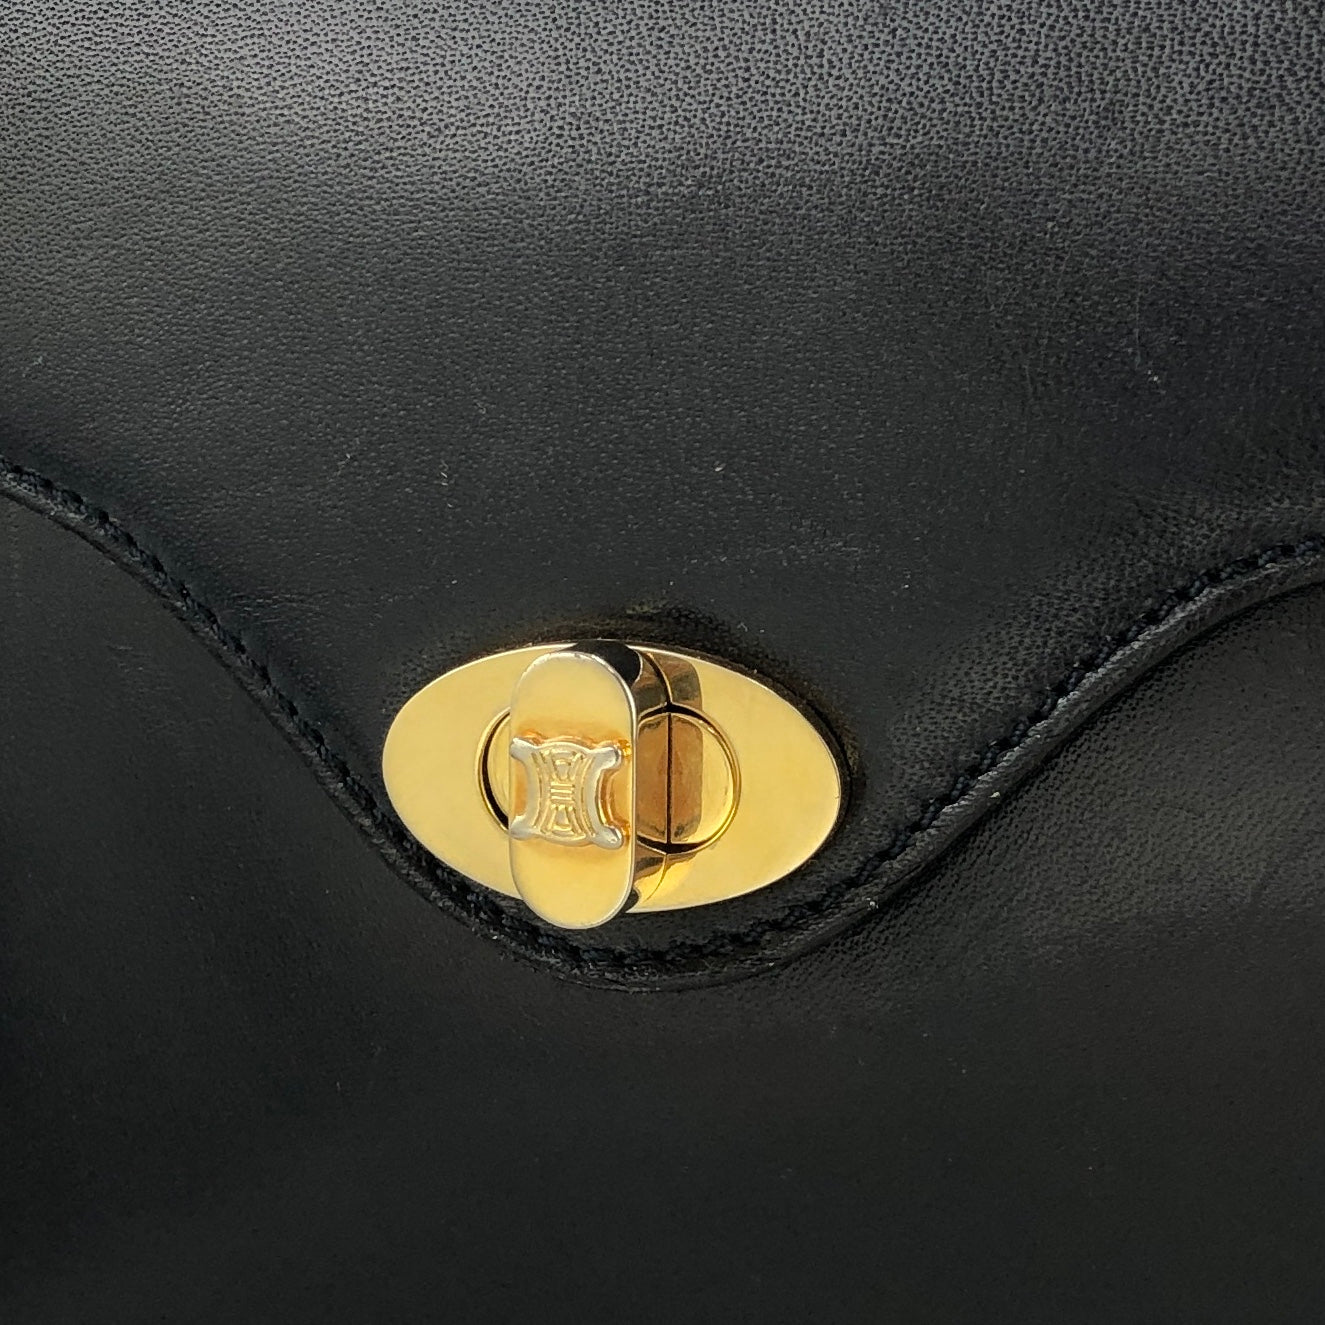 CELINE Turn lock Blason logo Leather Shoulder bag Navy Vintage Old CELINE p62ipx